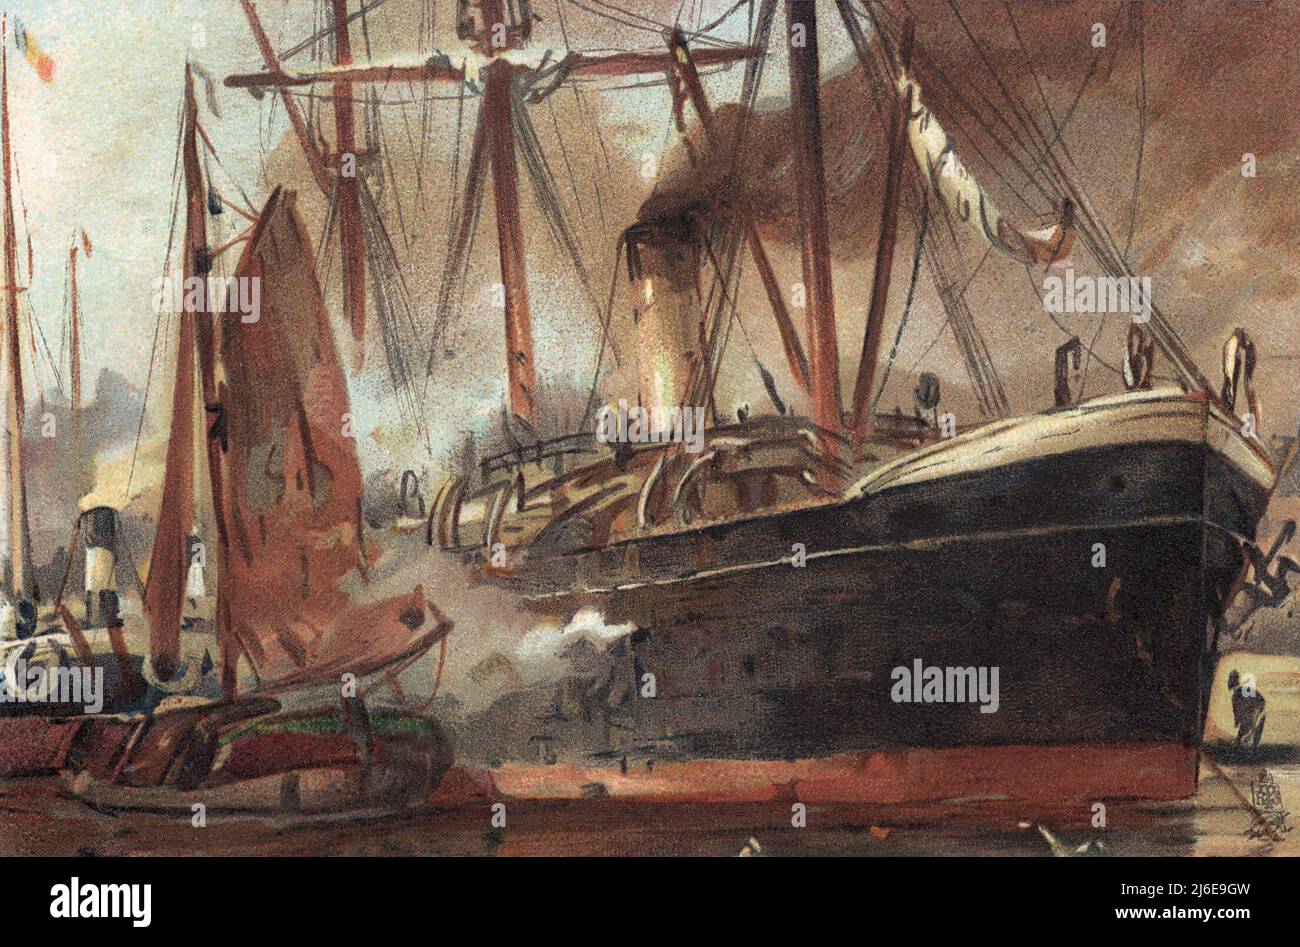 Raphael Tuck et fils 'Art' série carte postale de navires et bateaux dans le port. Banque D'Images